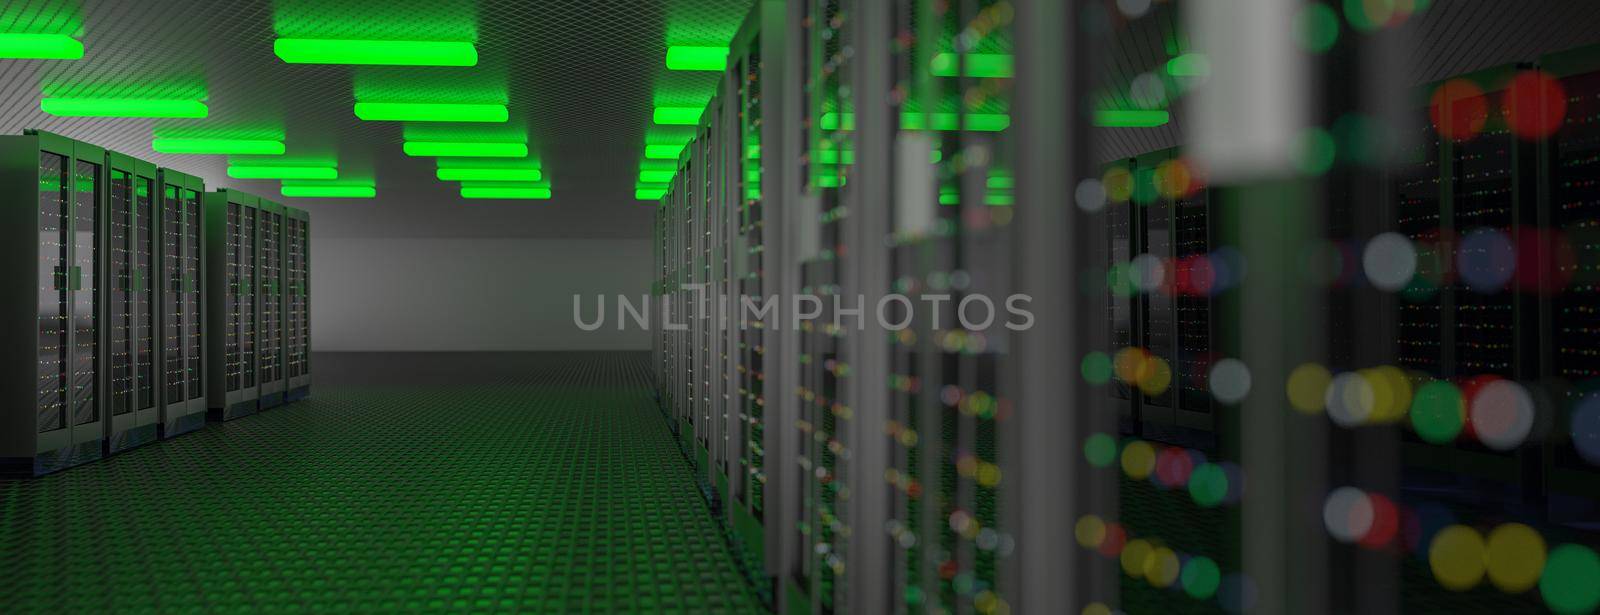 Server. Server racks in server room cloud data center. Datacenter hardware cluster. Backup, hosting, mainframe, mining, farm and computer rack with storage information. 3d illustration